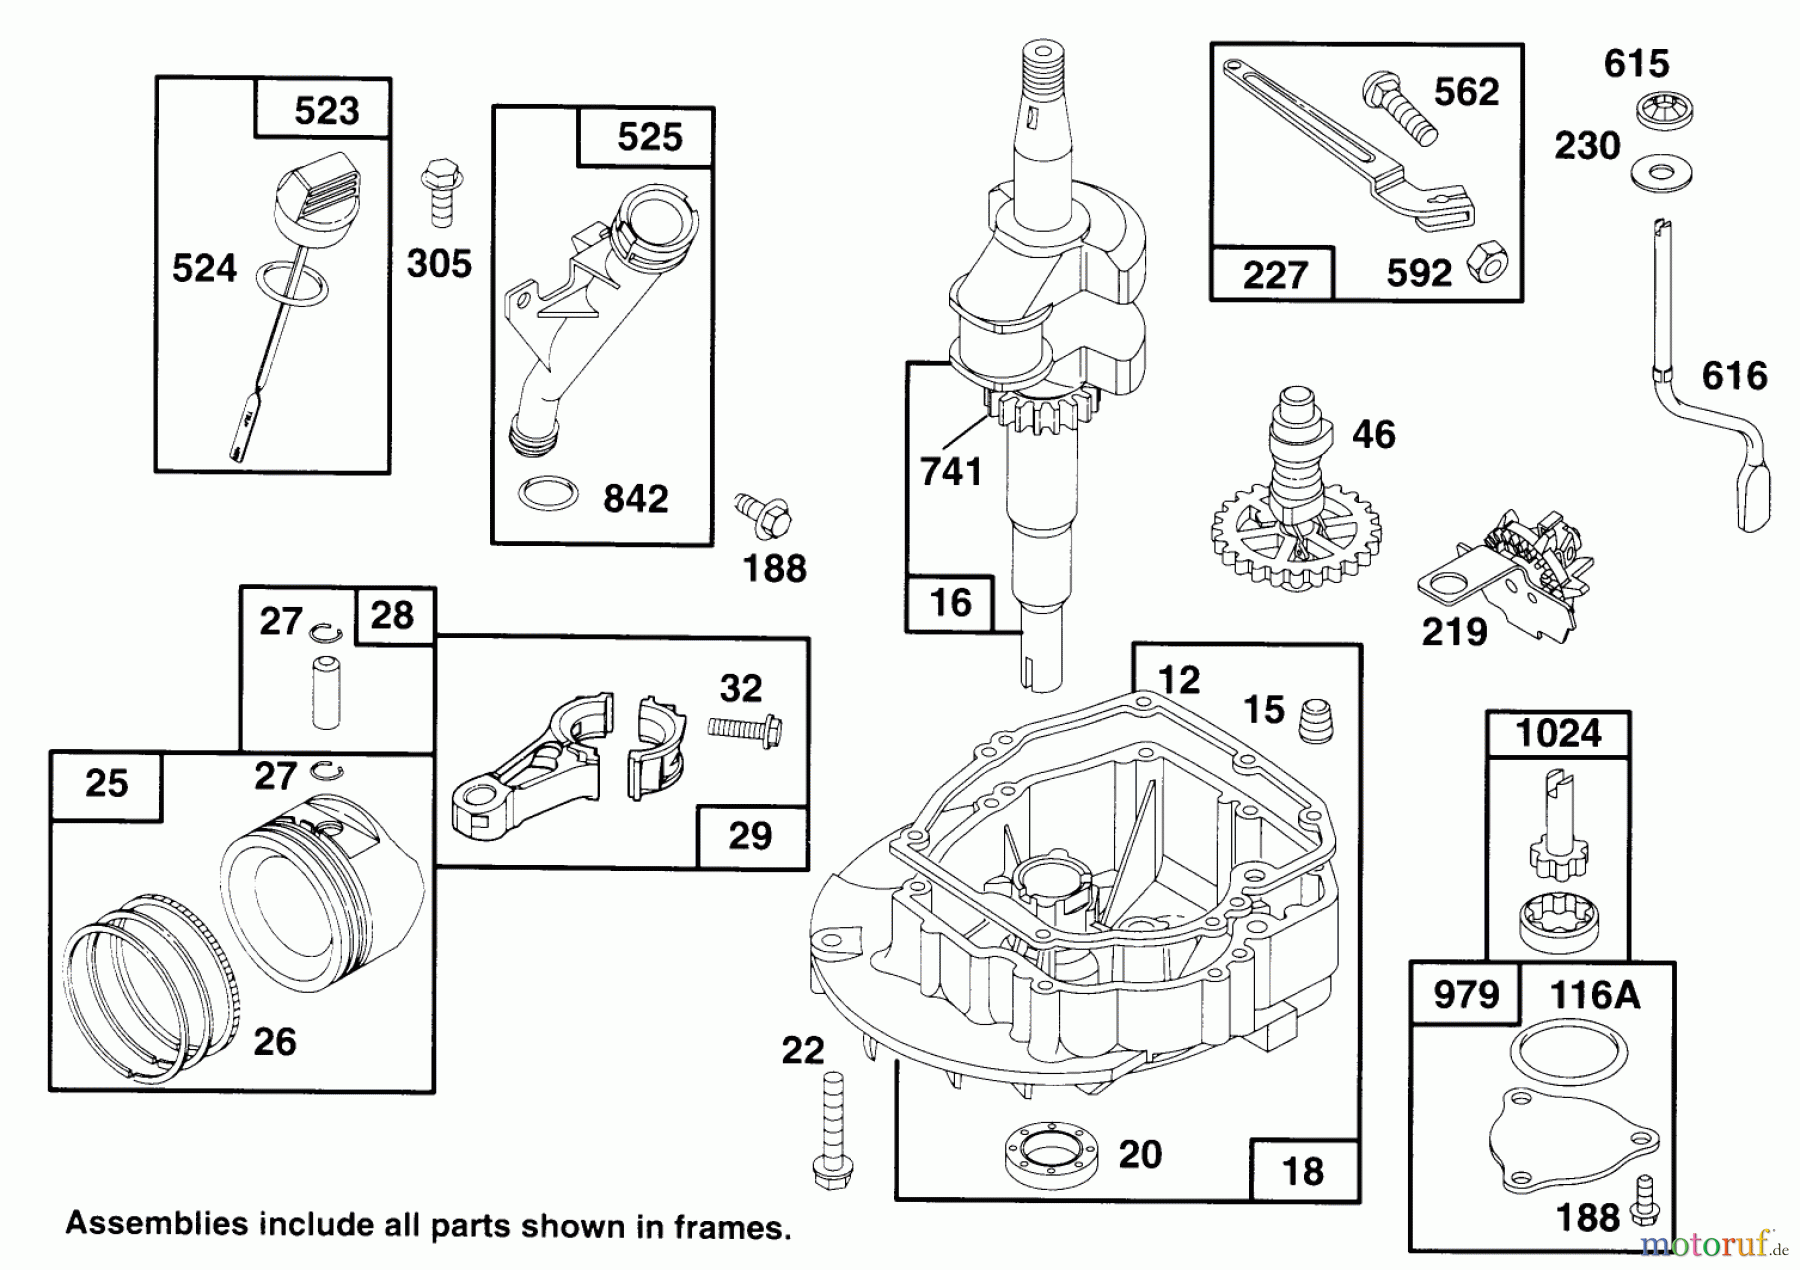  Toro Neu Mowers, Walk-Behind Seite 2 22151 - Toro Lawnmower, 1995 (5900001-5999999) ENGINE GTS 150 #2